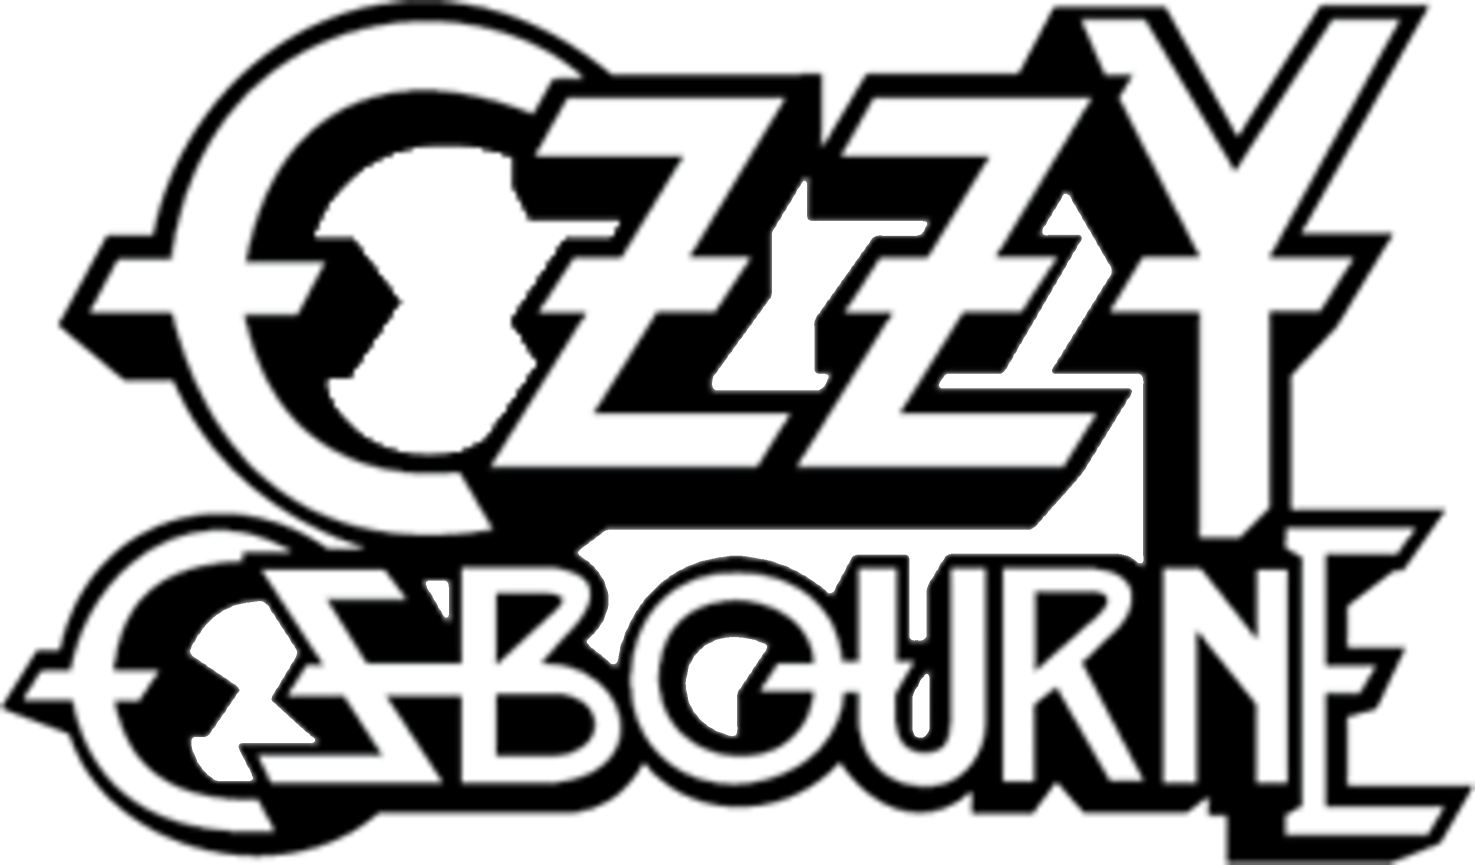 Logo Ozzy Osbourne Blank Meme Template